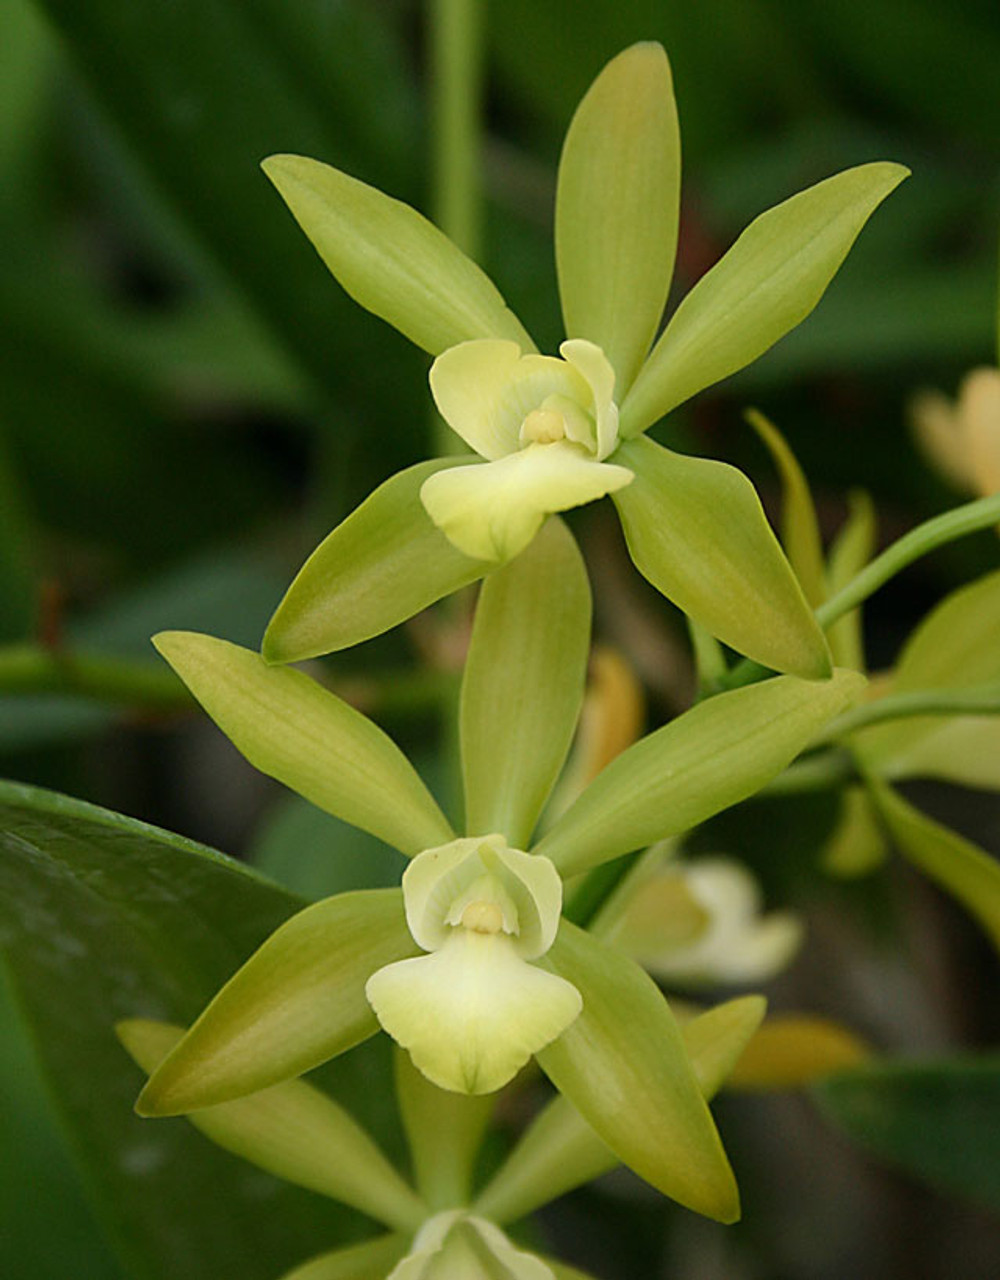 Epc. Burdekin Surprise 'Aranbeem'. - Odom's Orchids, Inc.